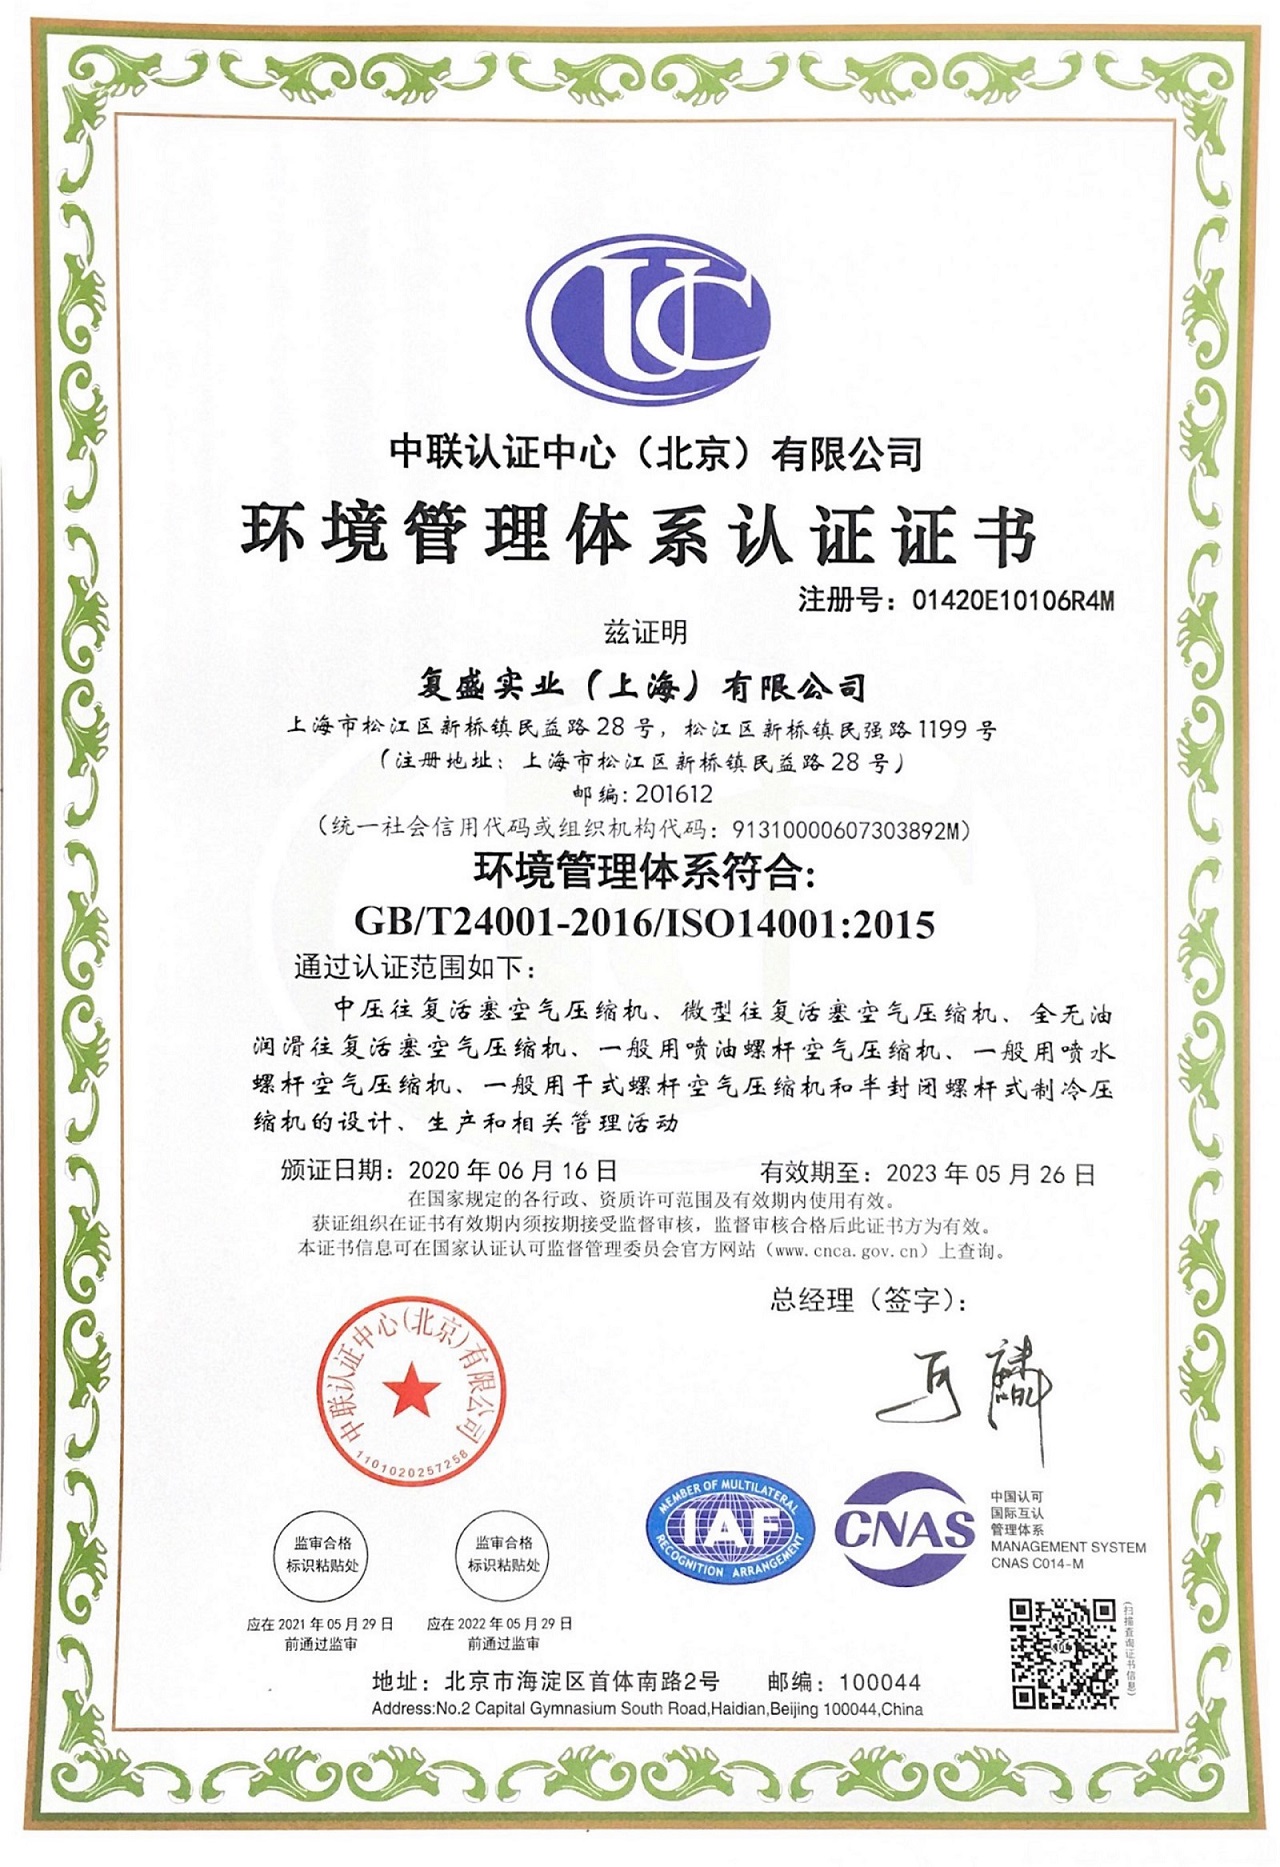 上海复盛空压机_环境管理体系认证证书_中文_202305.jpg